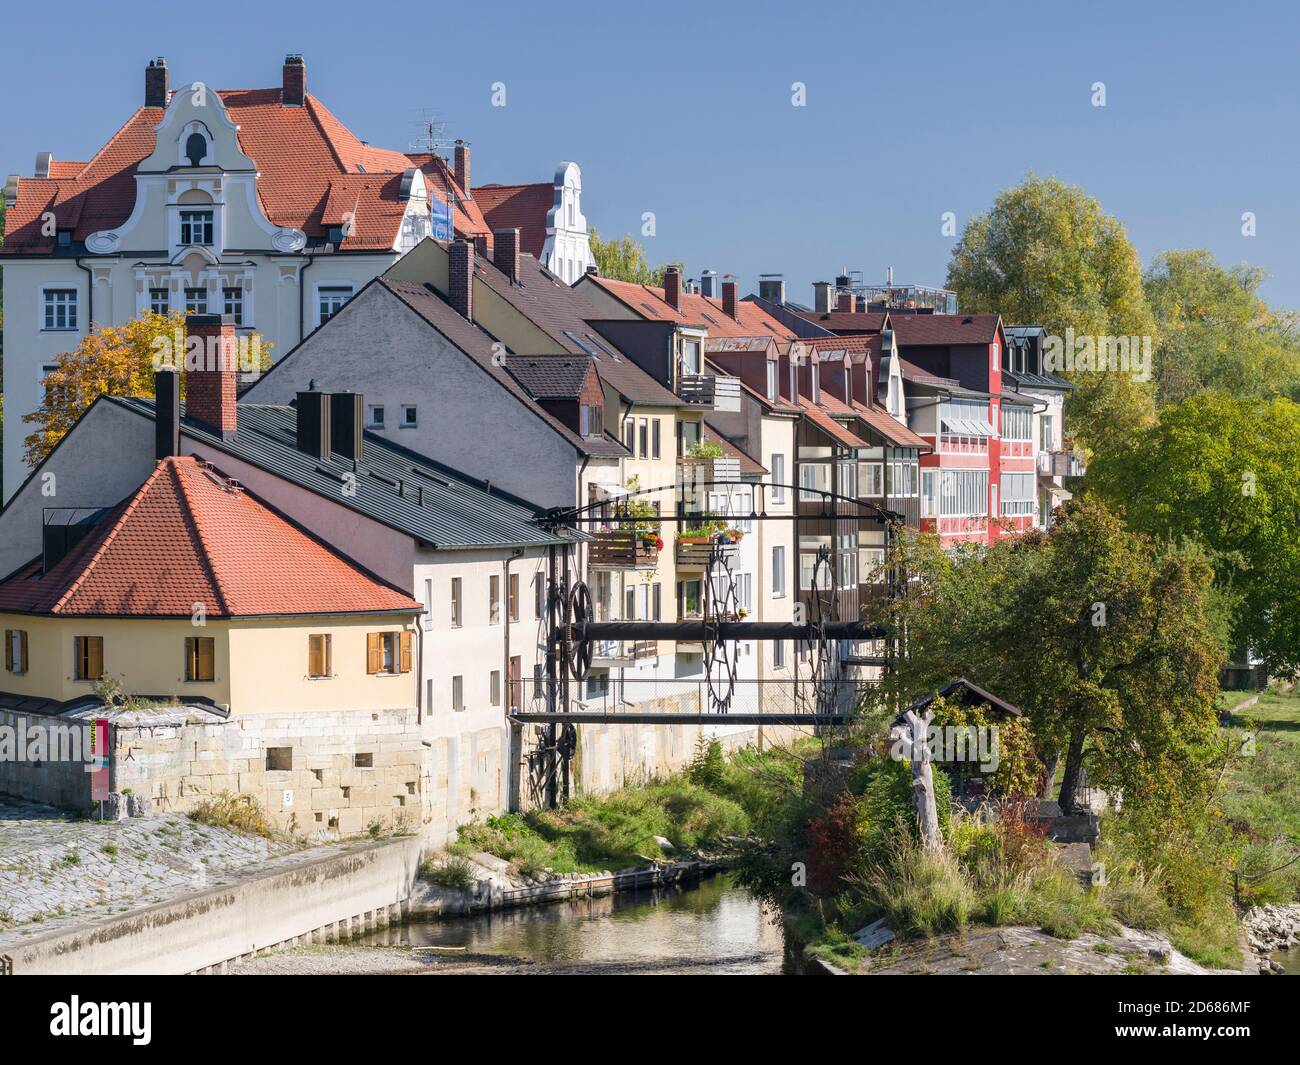 Regensburg en Baviera, el casco antiguo está catalogado como Patrimonio de la Humanidad de la UNESCO. El Jahninsel, una isla en el Danubio. Europa, Europa Central, Alemania, Bava Foto de stock